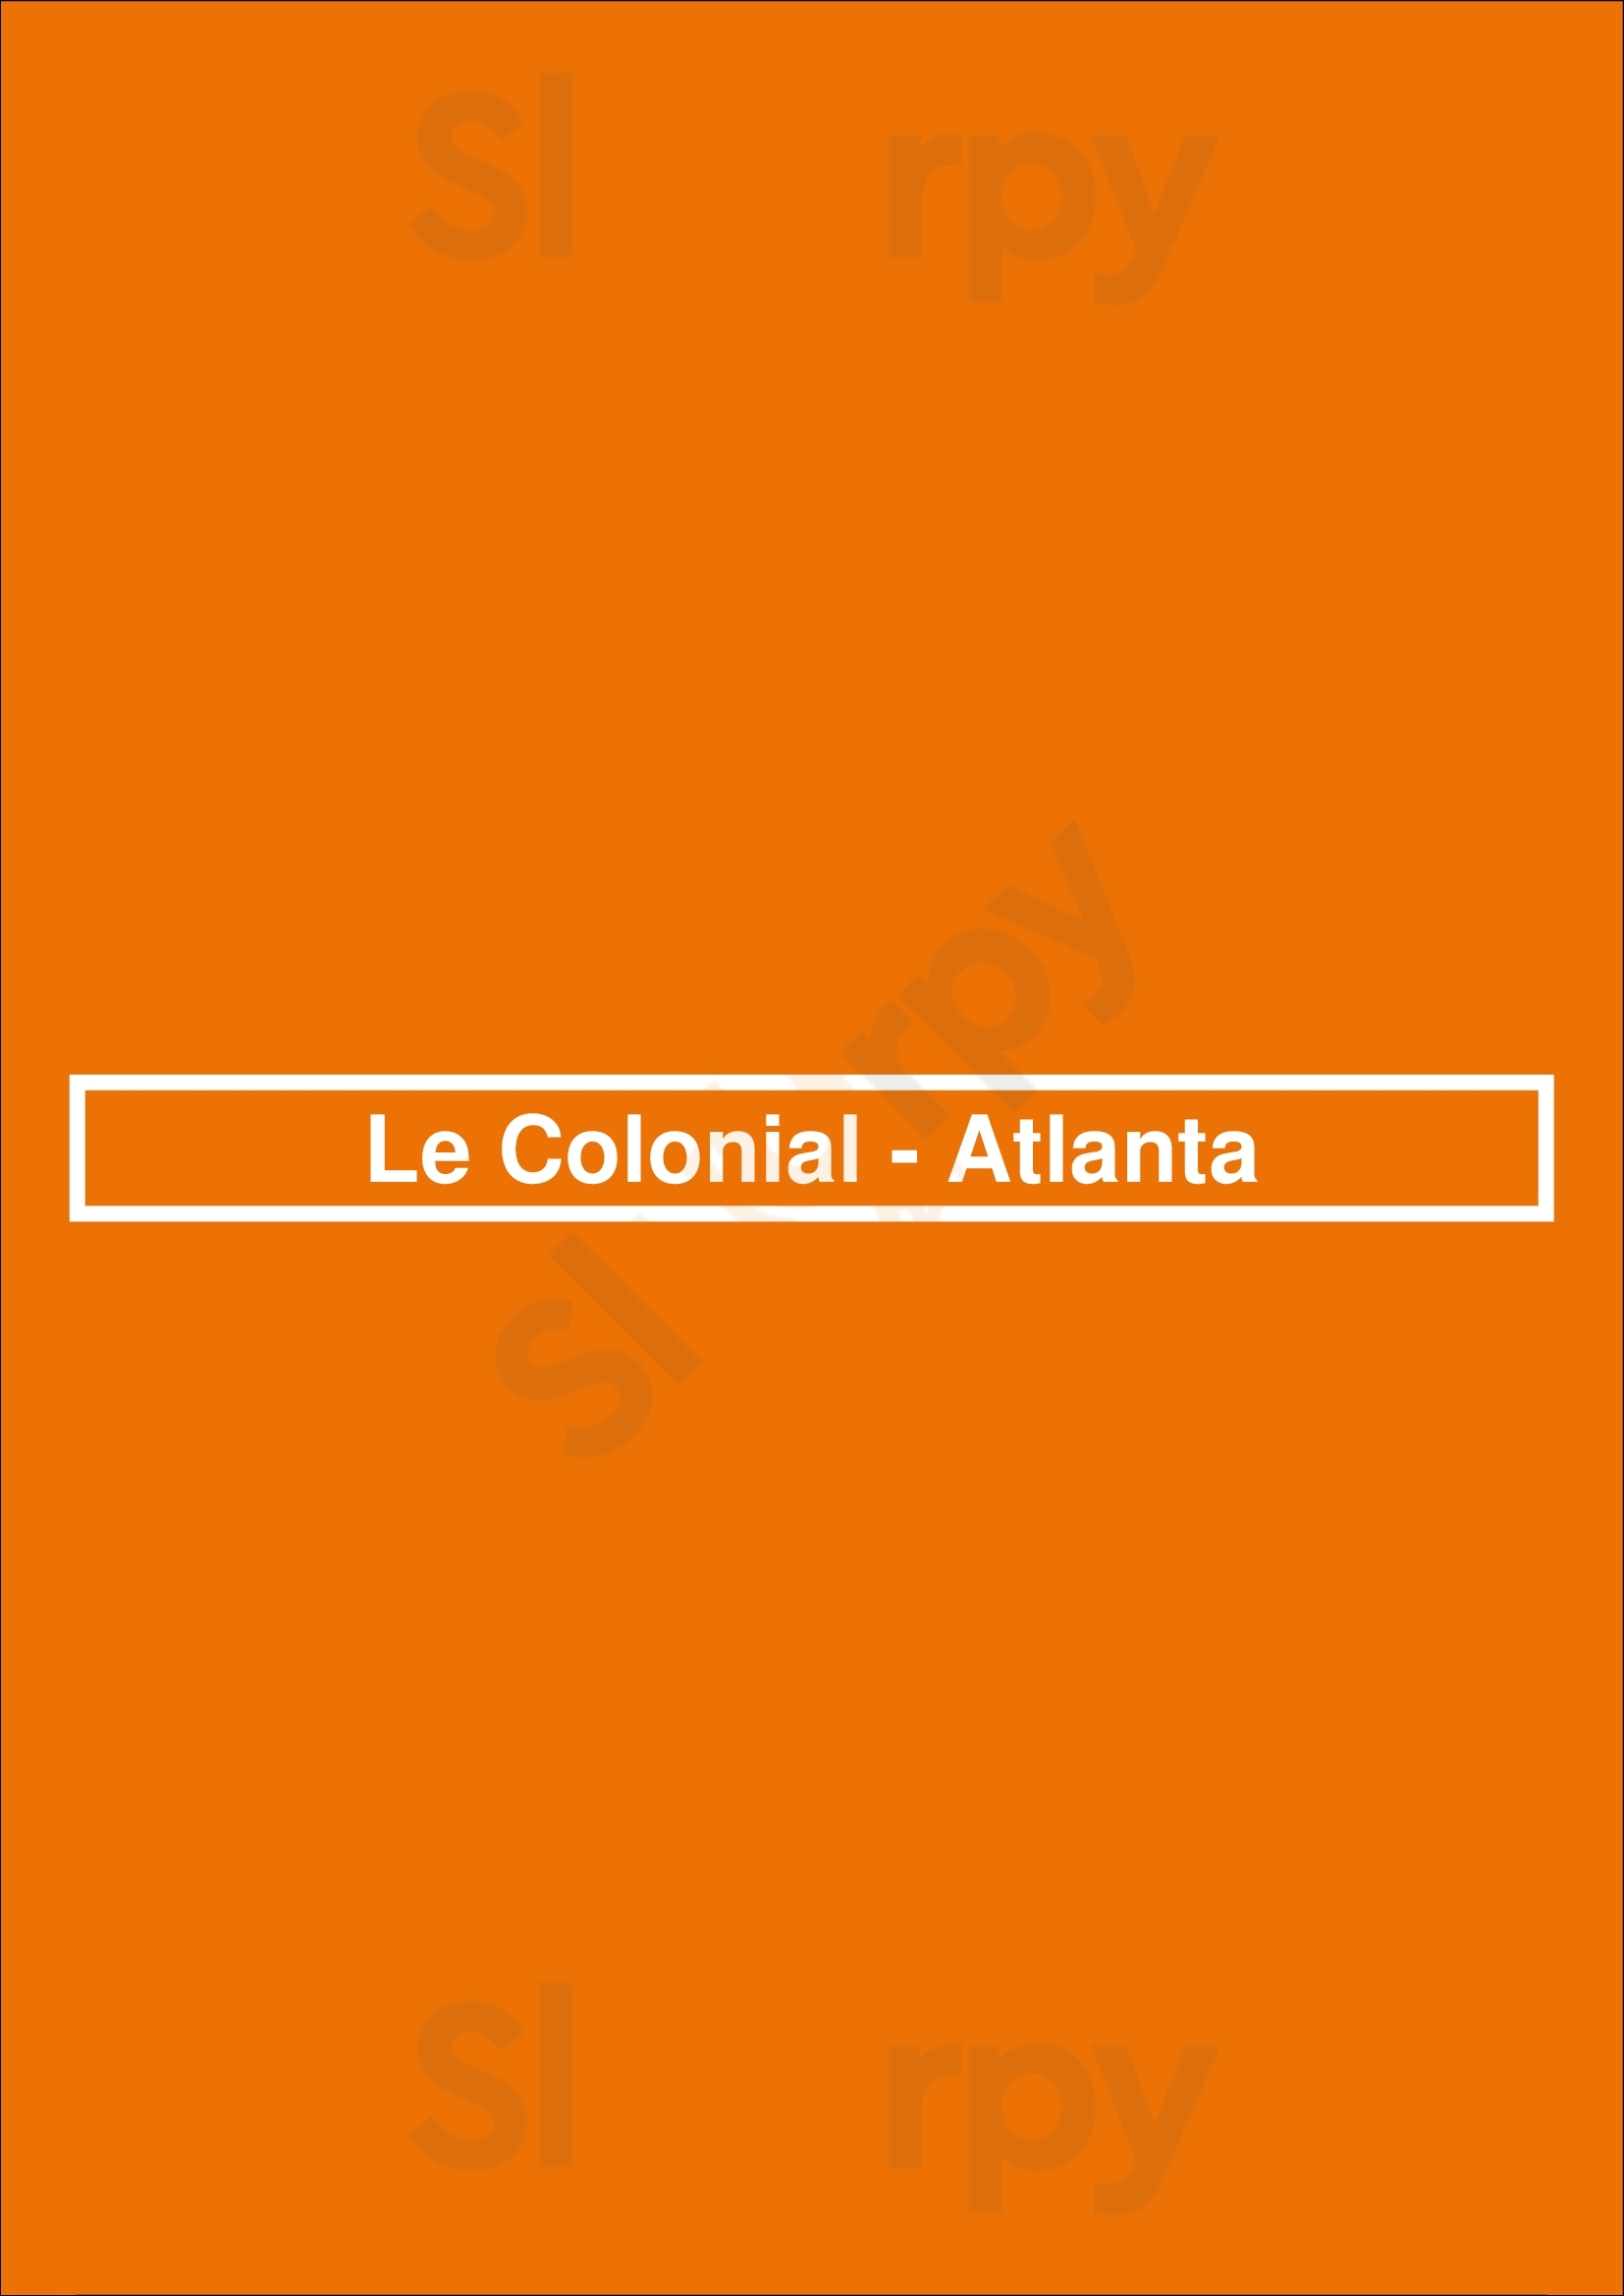 Le Colonial Atlanta Menu - 1